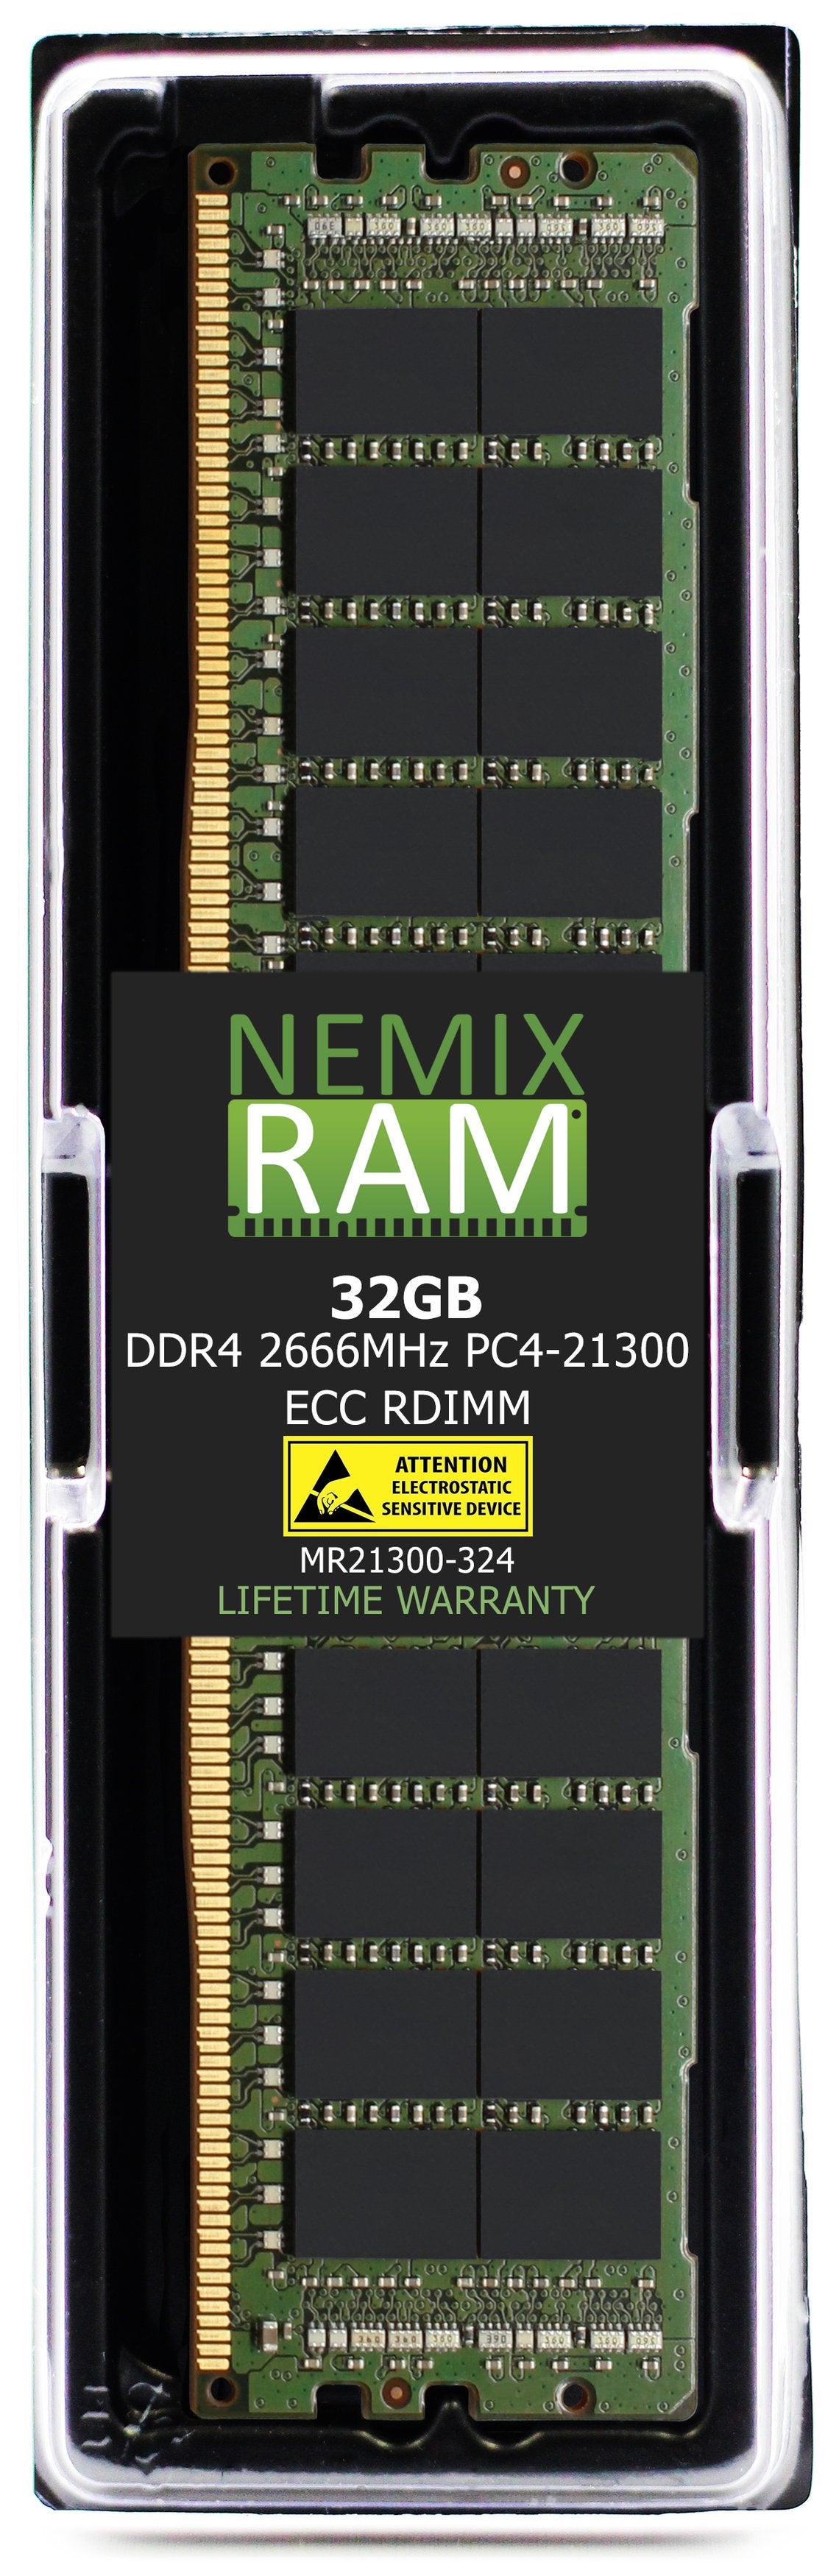 32GB DDR4 2666MHZ PC4-21300 RDIMM Compatible with Supermicro MEM-DR432L-CL05-ER26